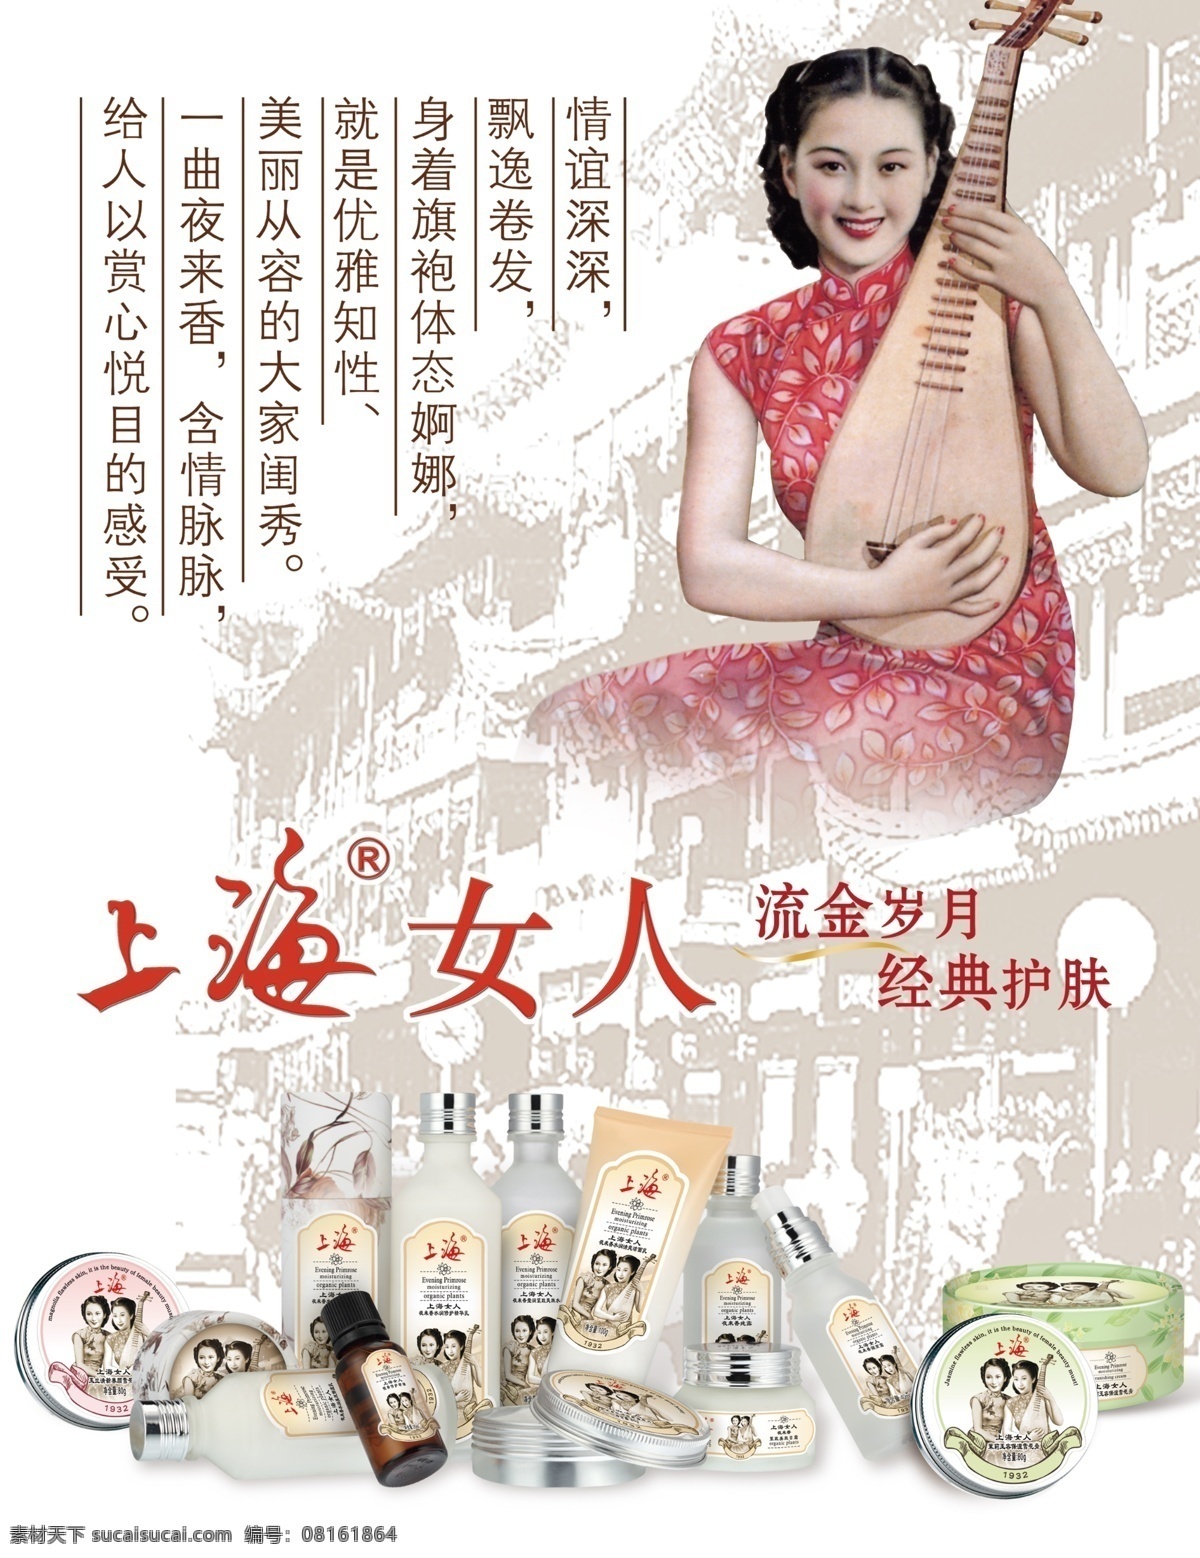 上海女人护肤 上海女人 护肤品 流金岁月 金典护肤 护肤海报 美容美发